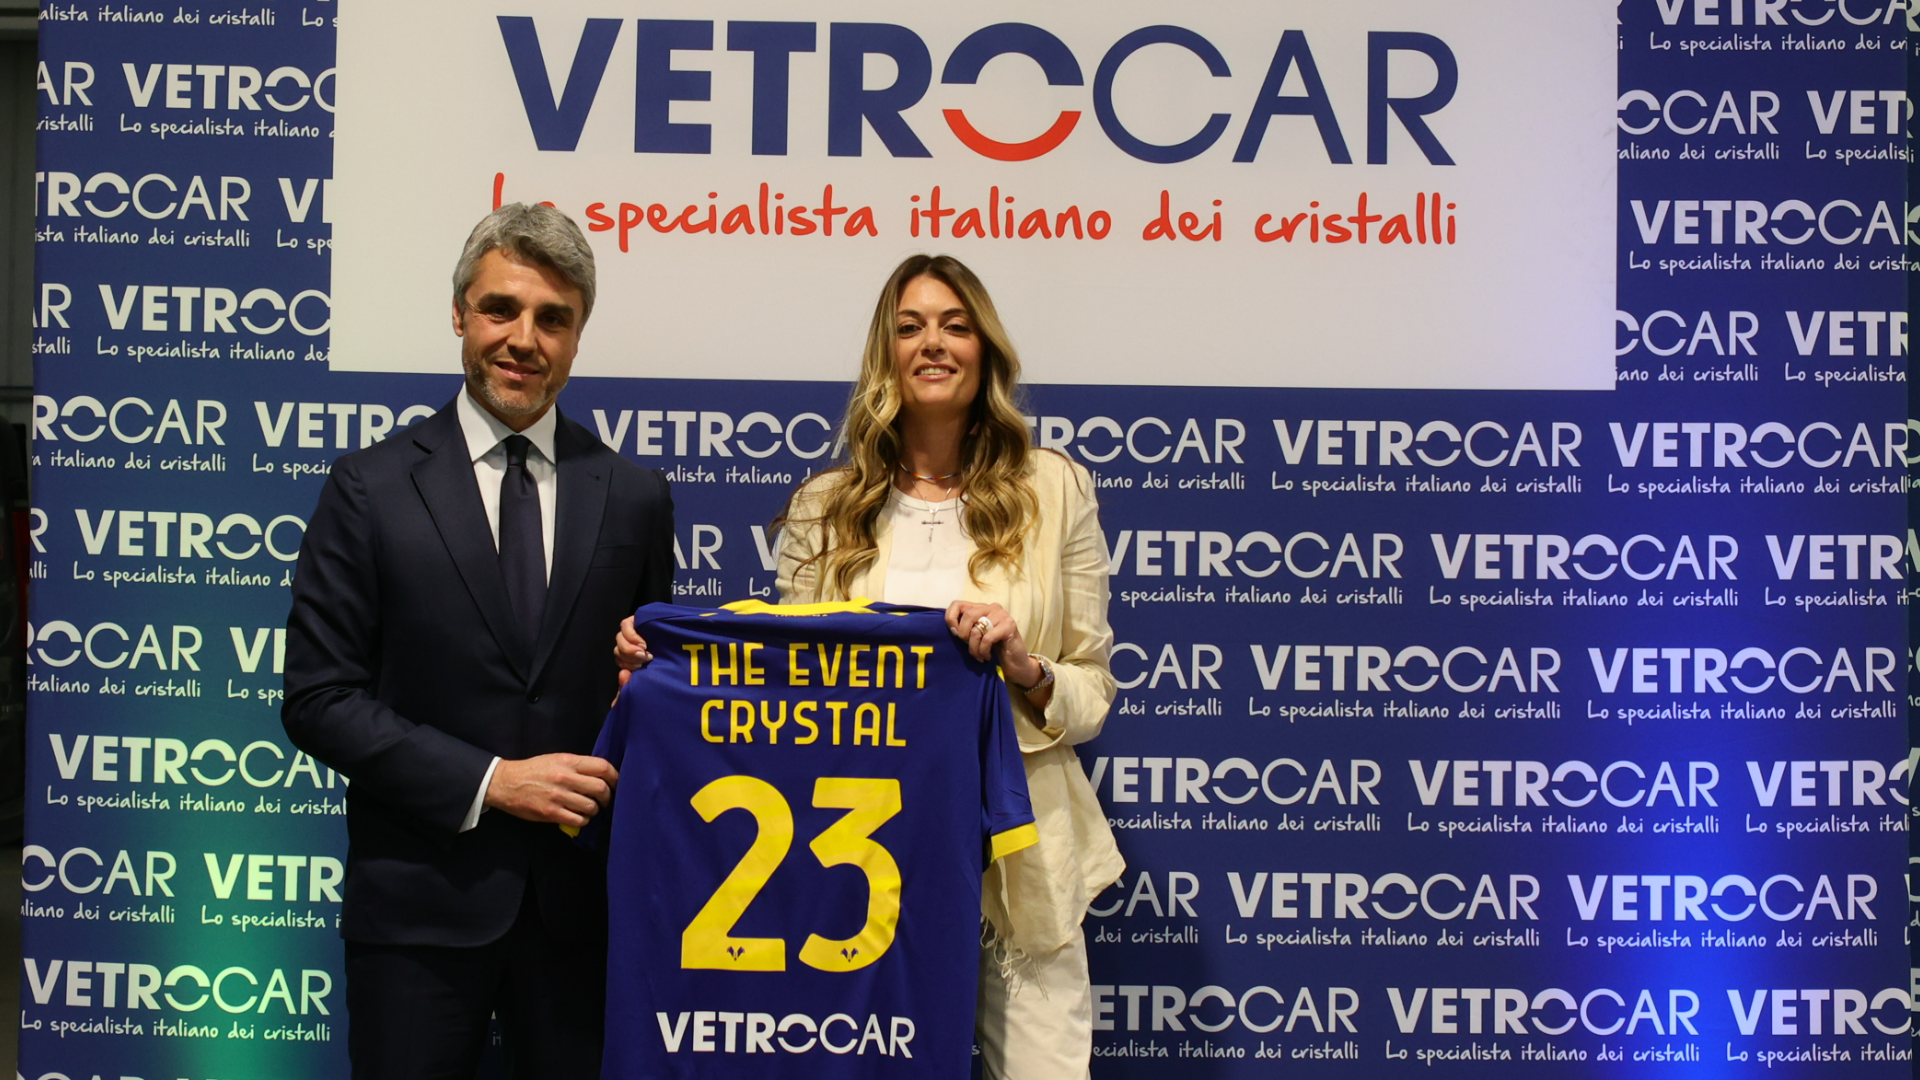 The Event Crystal, VetroCar ospita Hellas Verona nel proprio centro di Verona